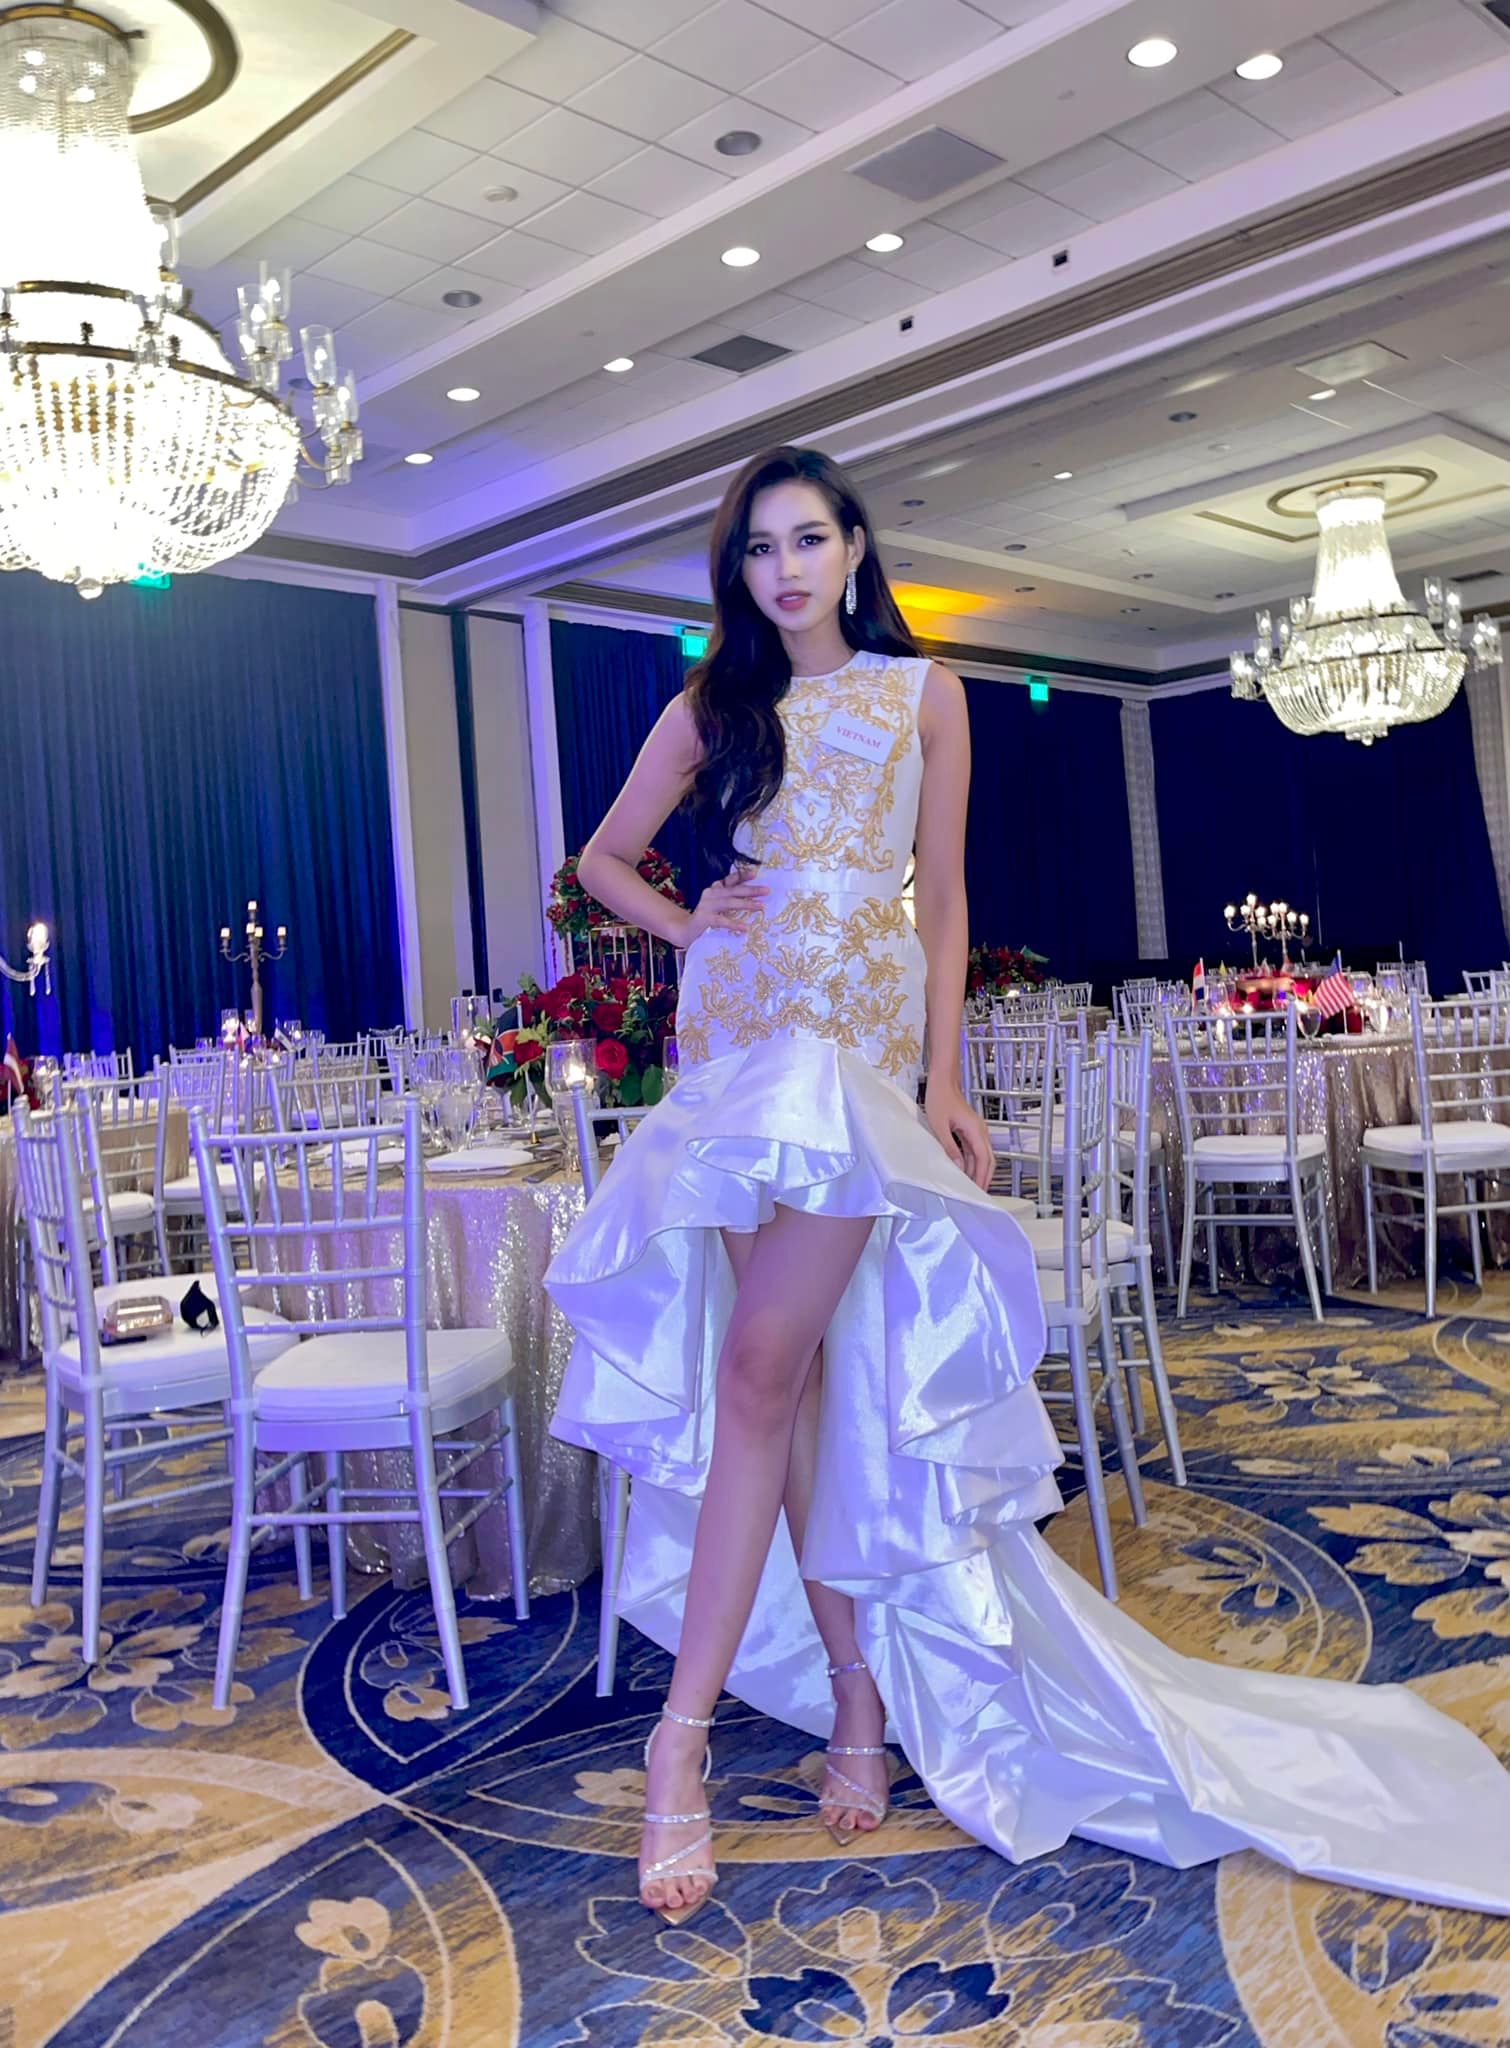 Đỗ Thị Hà có cơ hội trở lại thi chung kết Miss World 2021 không, khi BTC có thông báo mới đầy bất lợi?